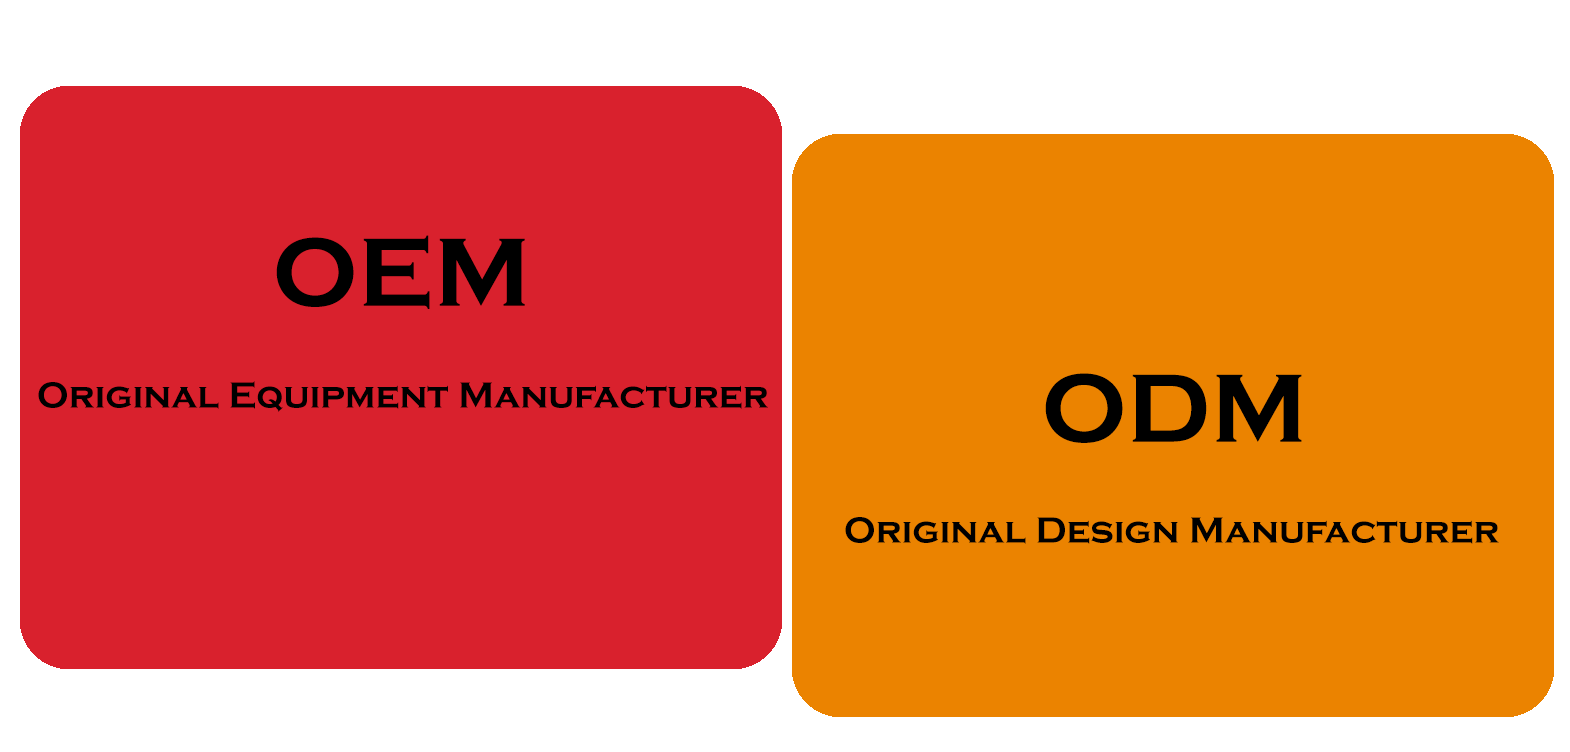 Оем производители. OEM ODM. OEM поставщик. OEM, ODM контракты. OEM Original Equipment Manufacturer.